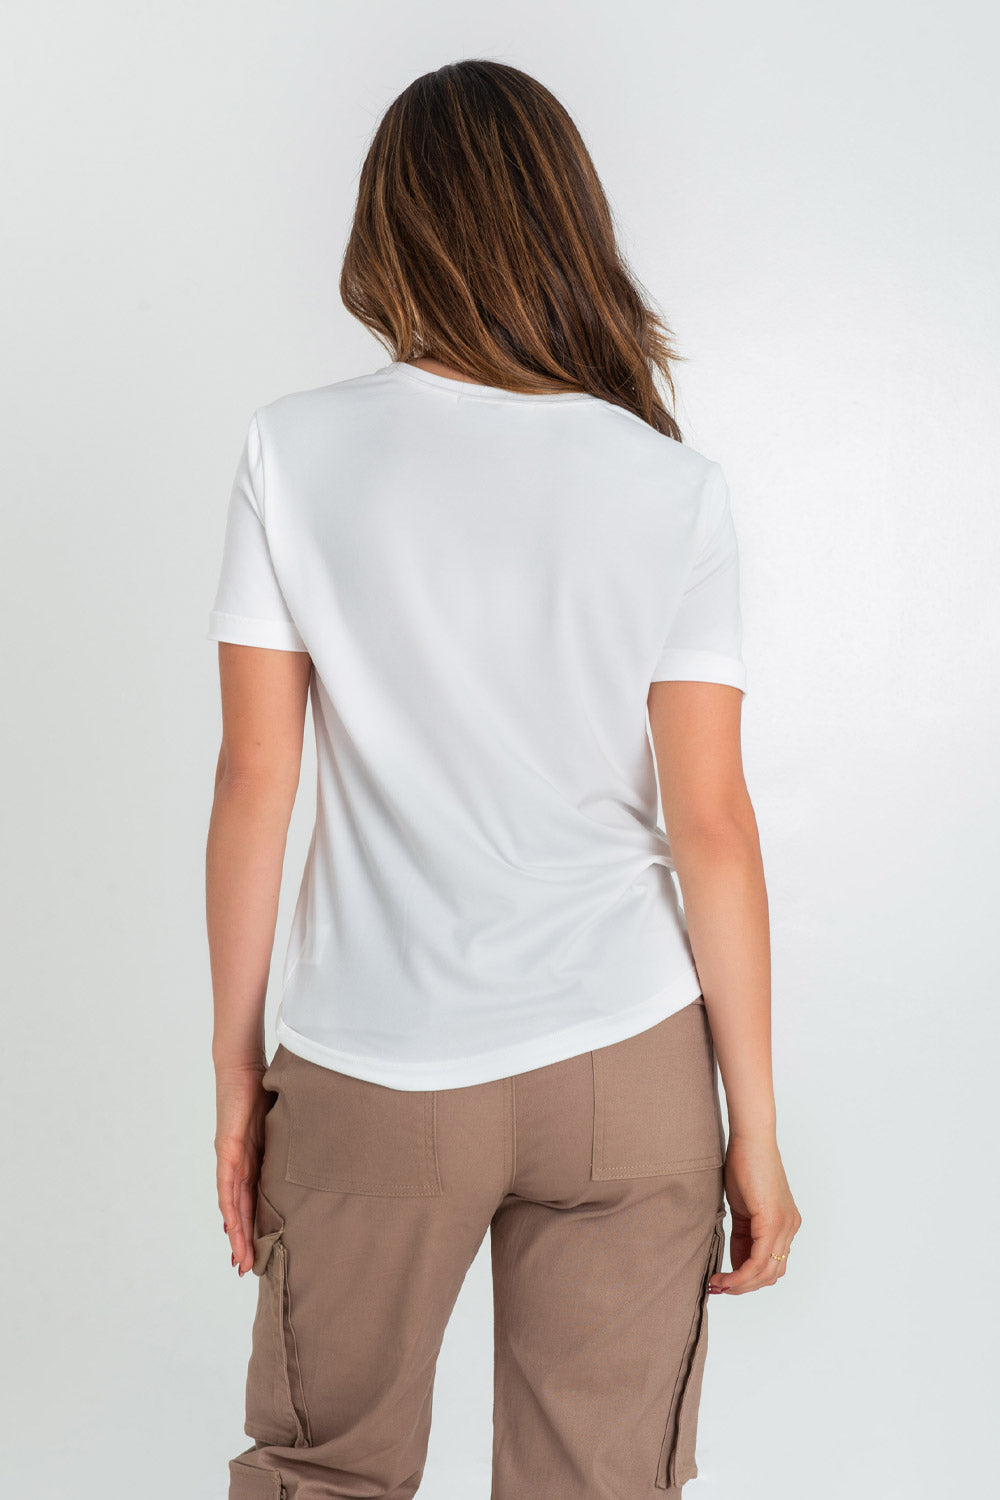 Camiseta básica de fit recto, manga corta y cuello redondo.